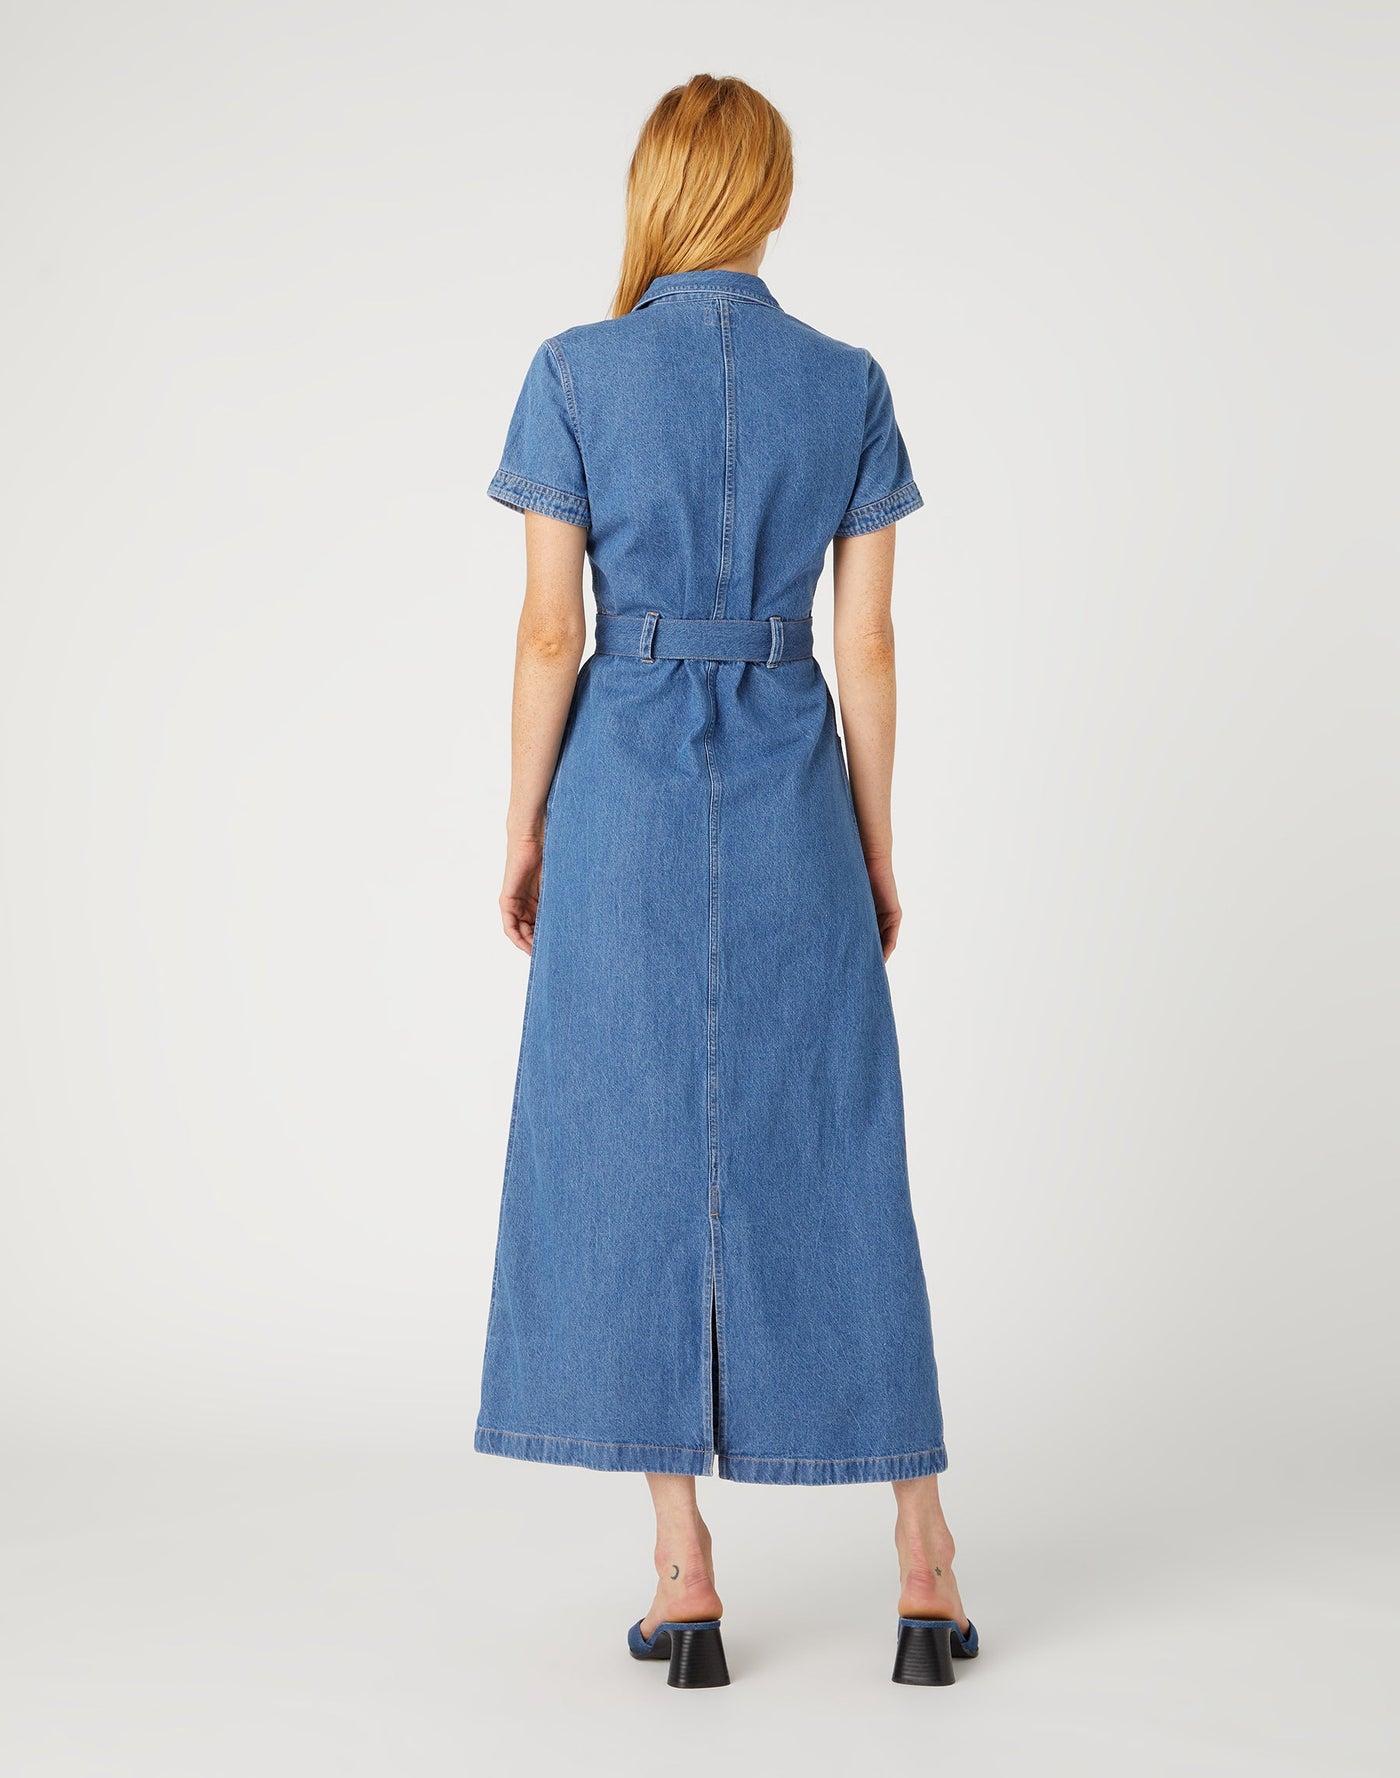 Seamed Short Sleeve Dress in Mid Stonewash Jeanskleid Wrangler   